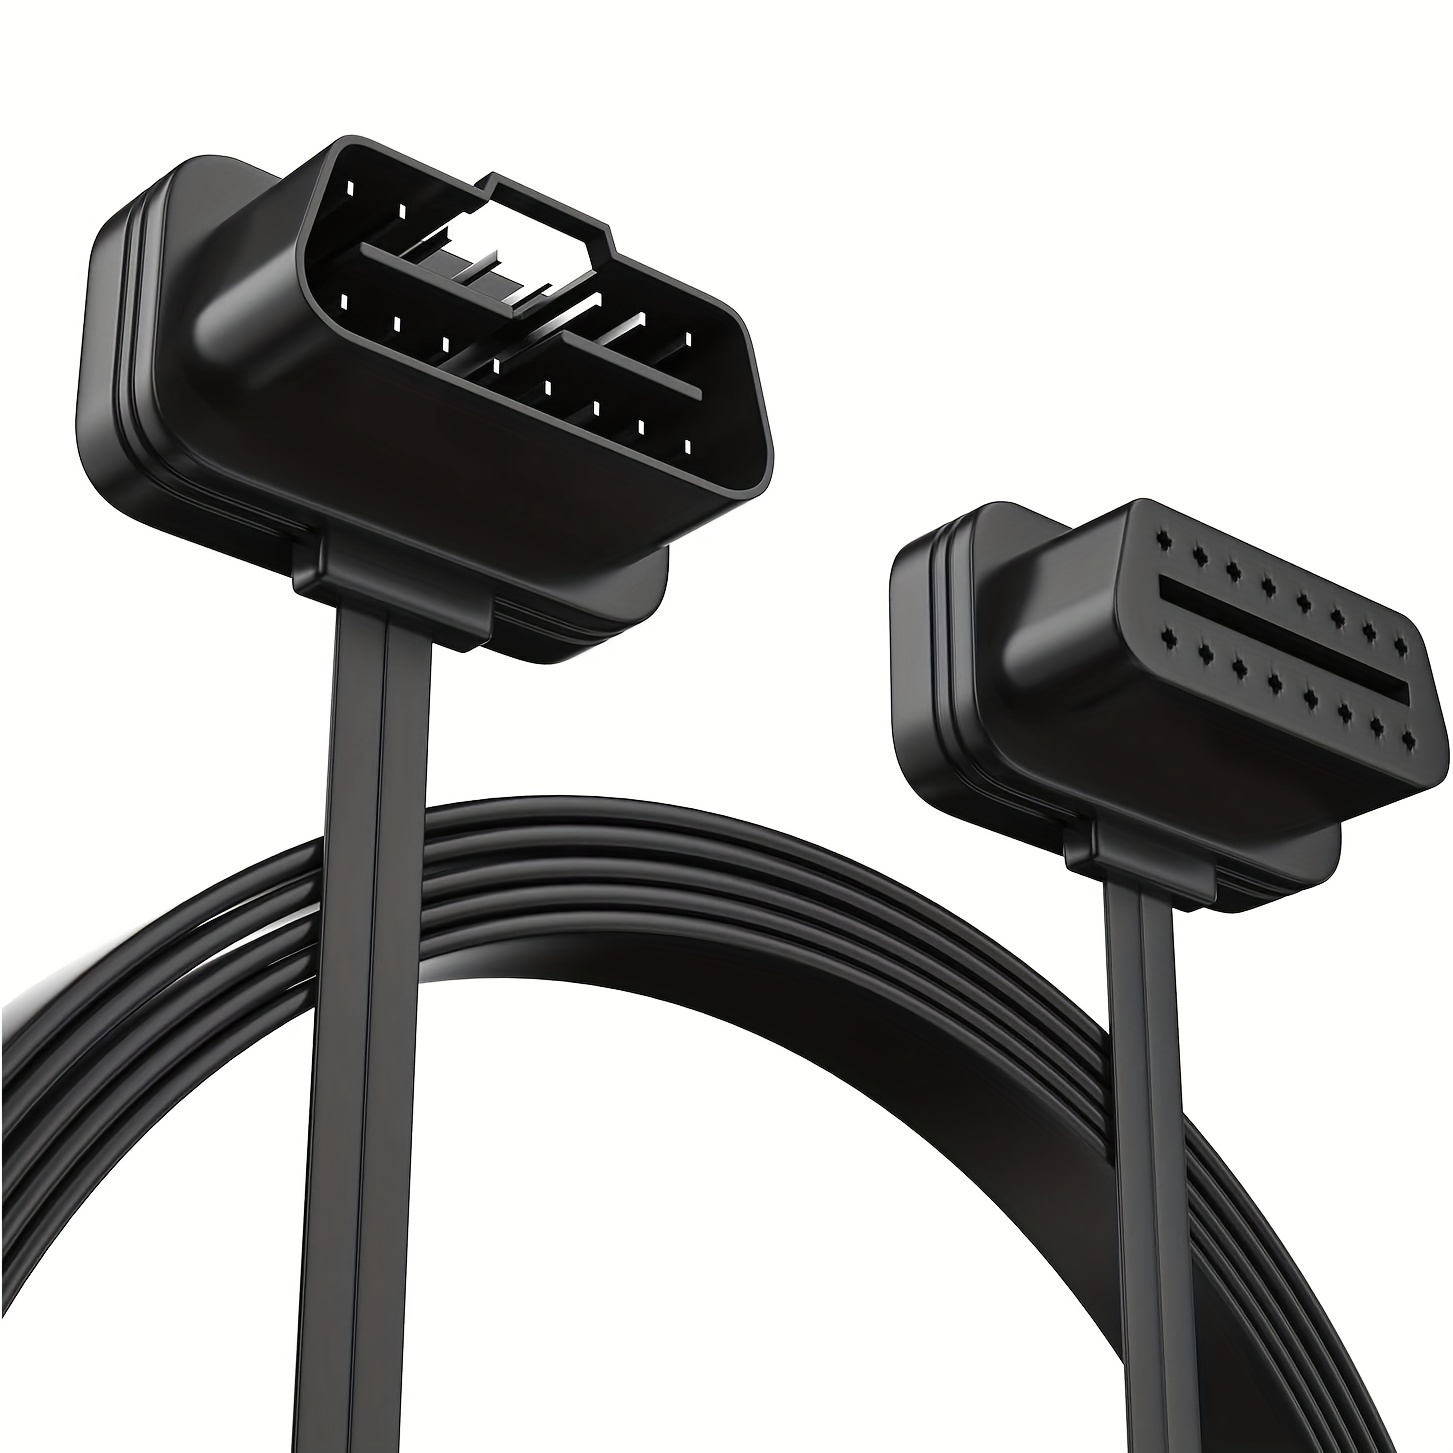 OBD2 16 pin male to DB15 pin female diagnostic cable compatible